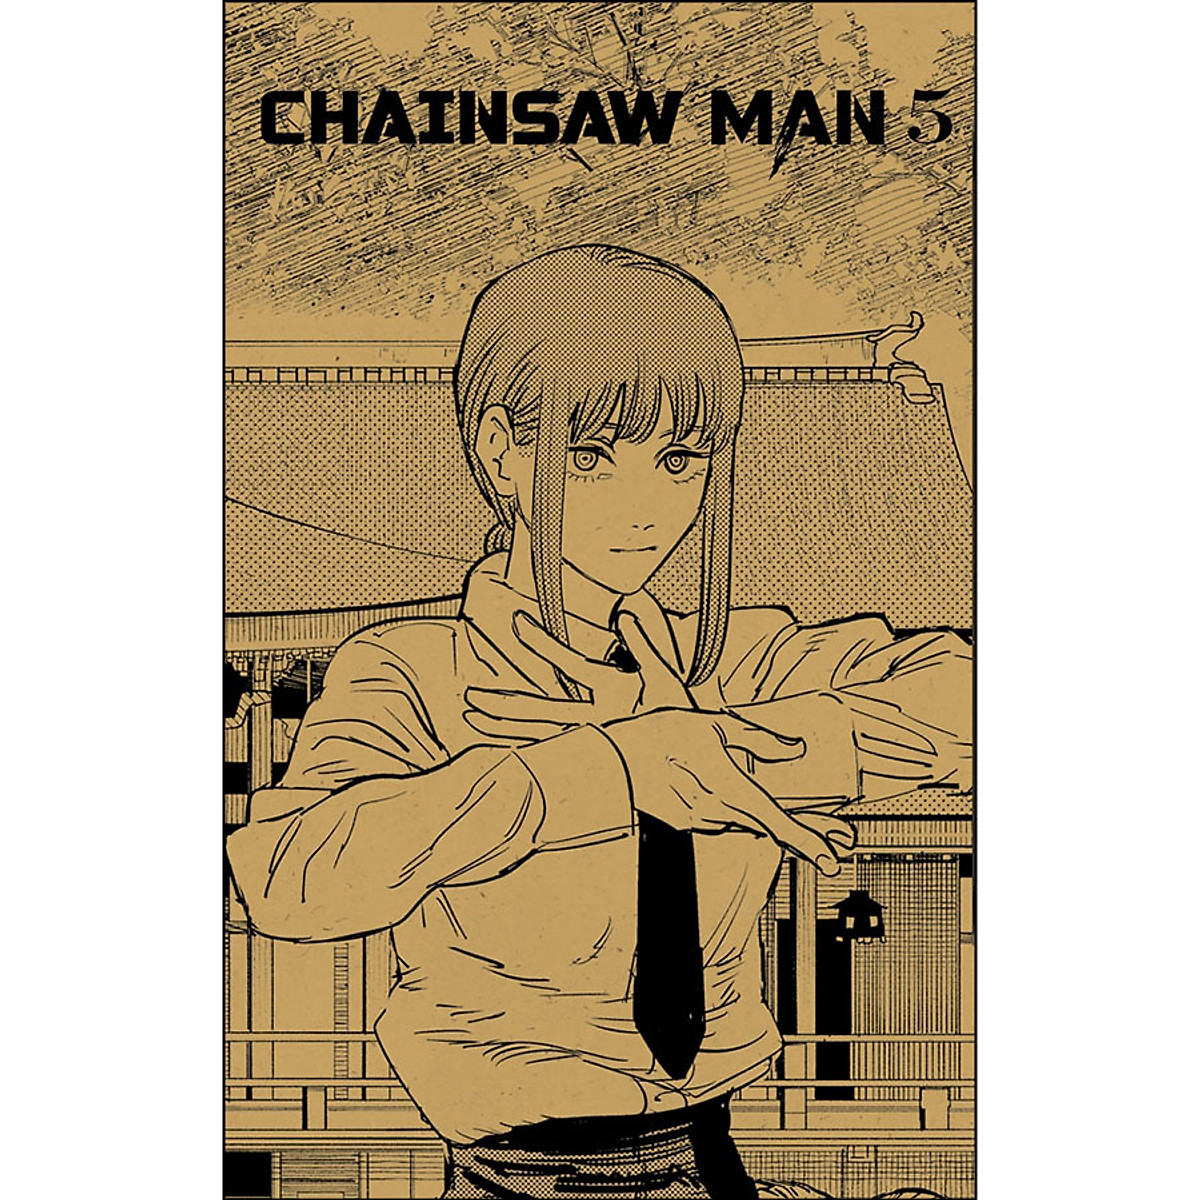 Chainsaw Man - Tập 5